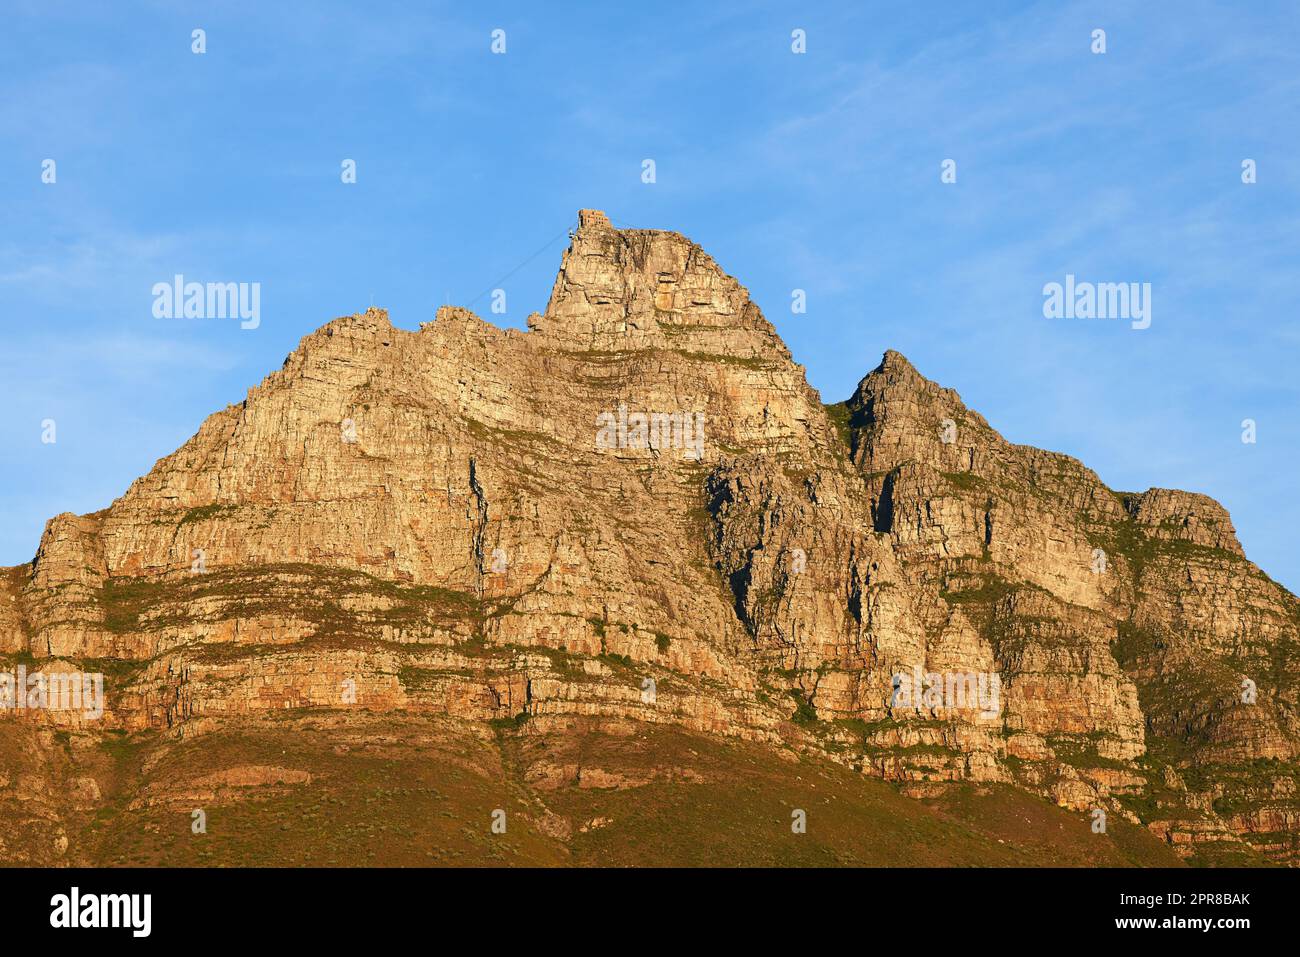 Vue paysage de la montagne de la Table au Cap, Afrique du Sud contre ciel bleu avec espace de copie. Voyage et tourisme de site célèbre, rocailleux et terrain accidenté. Vacances et vacances à l'étranger et à l'étranger Banque D'Images